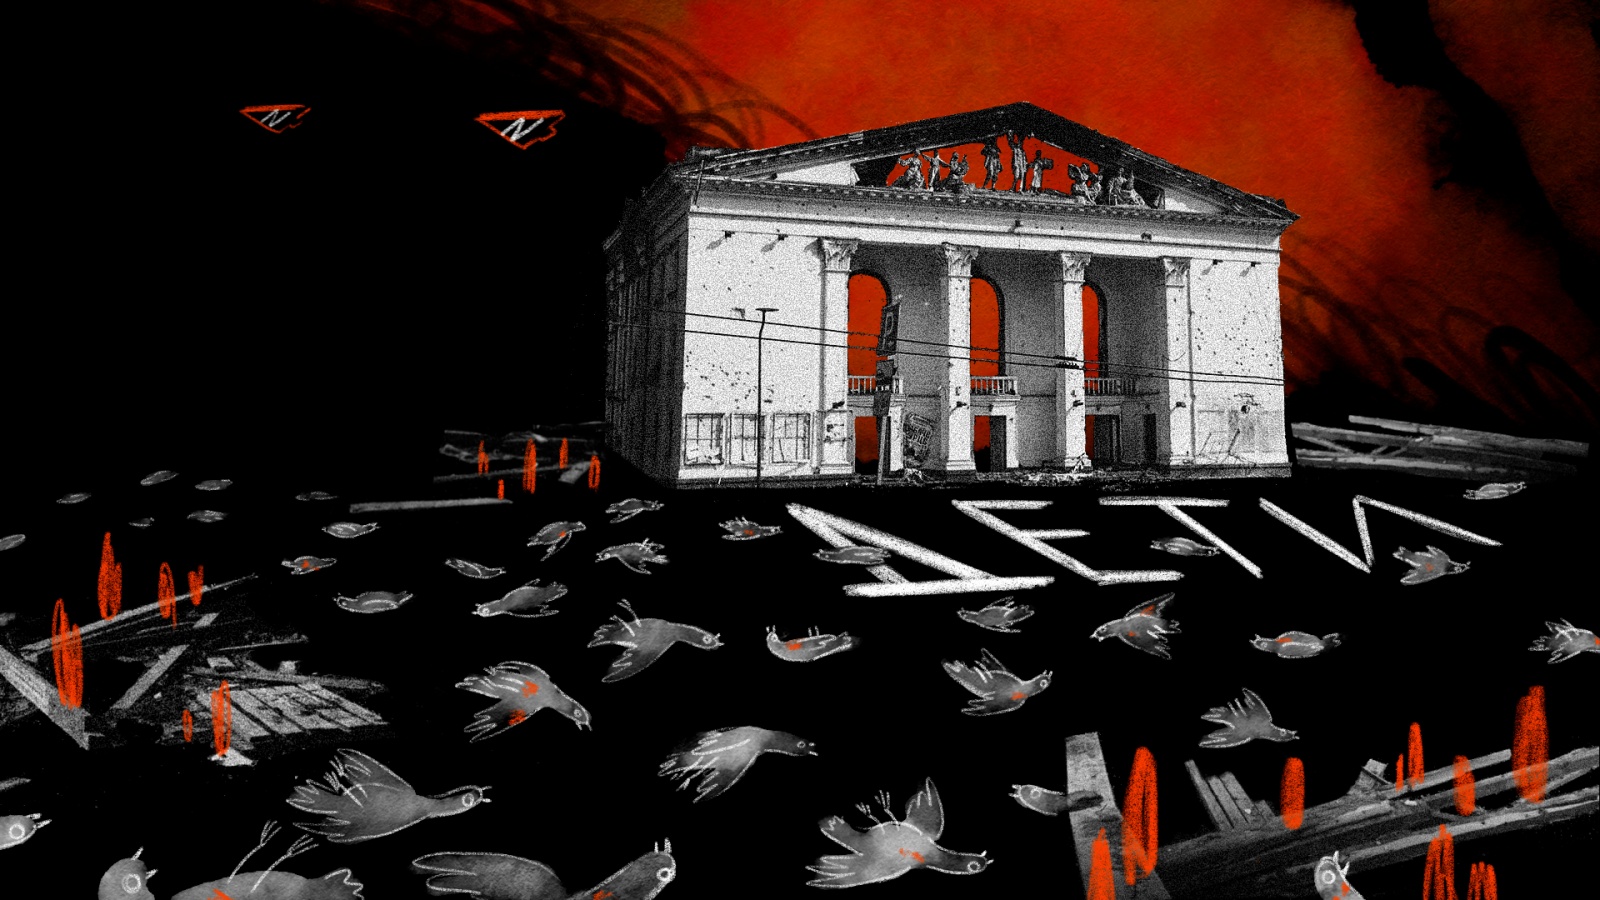 rus: Графічно зображений Маріупольський драмтеатр, з наслідками бомбардування. Перед театром на асфальті — напис «Діти».